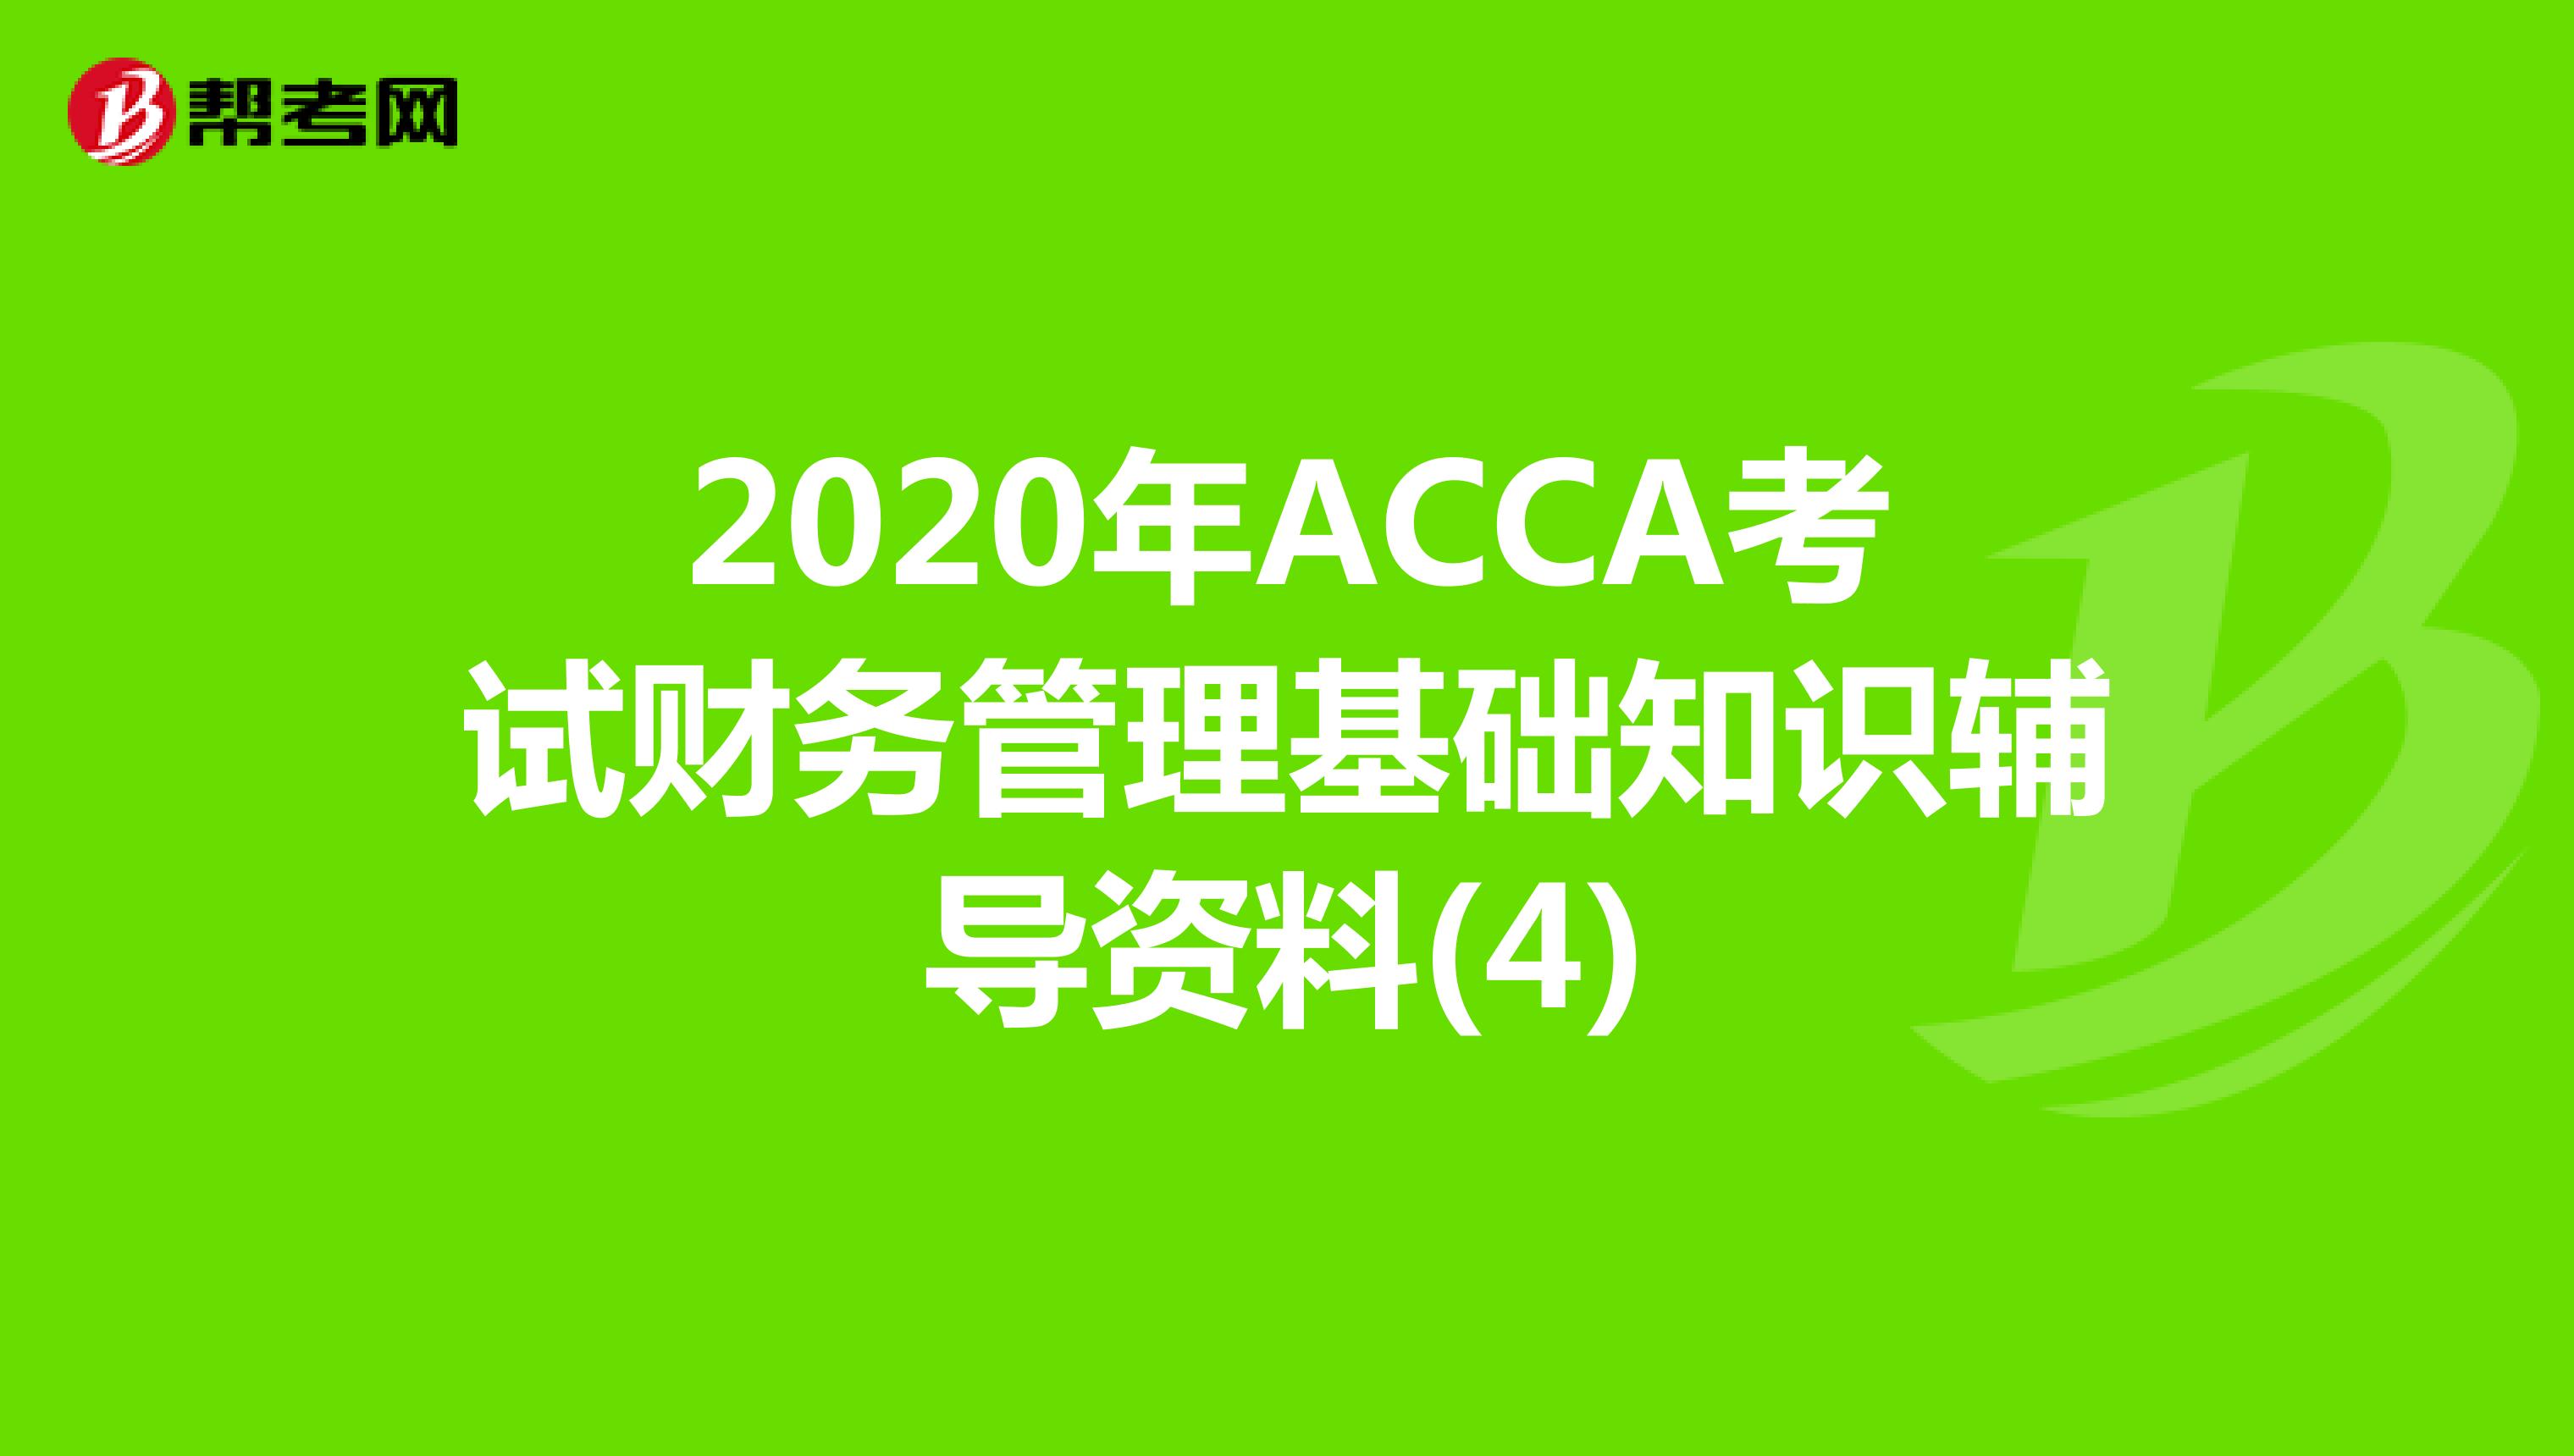 2020年ACCA考试财务管理基础知识辅导资料(4)